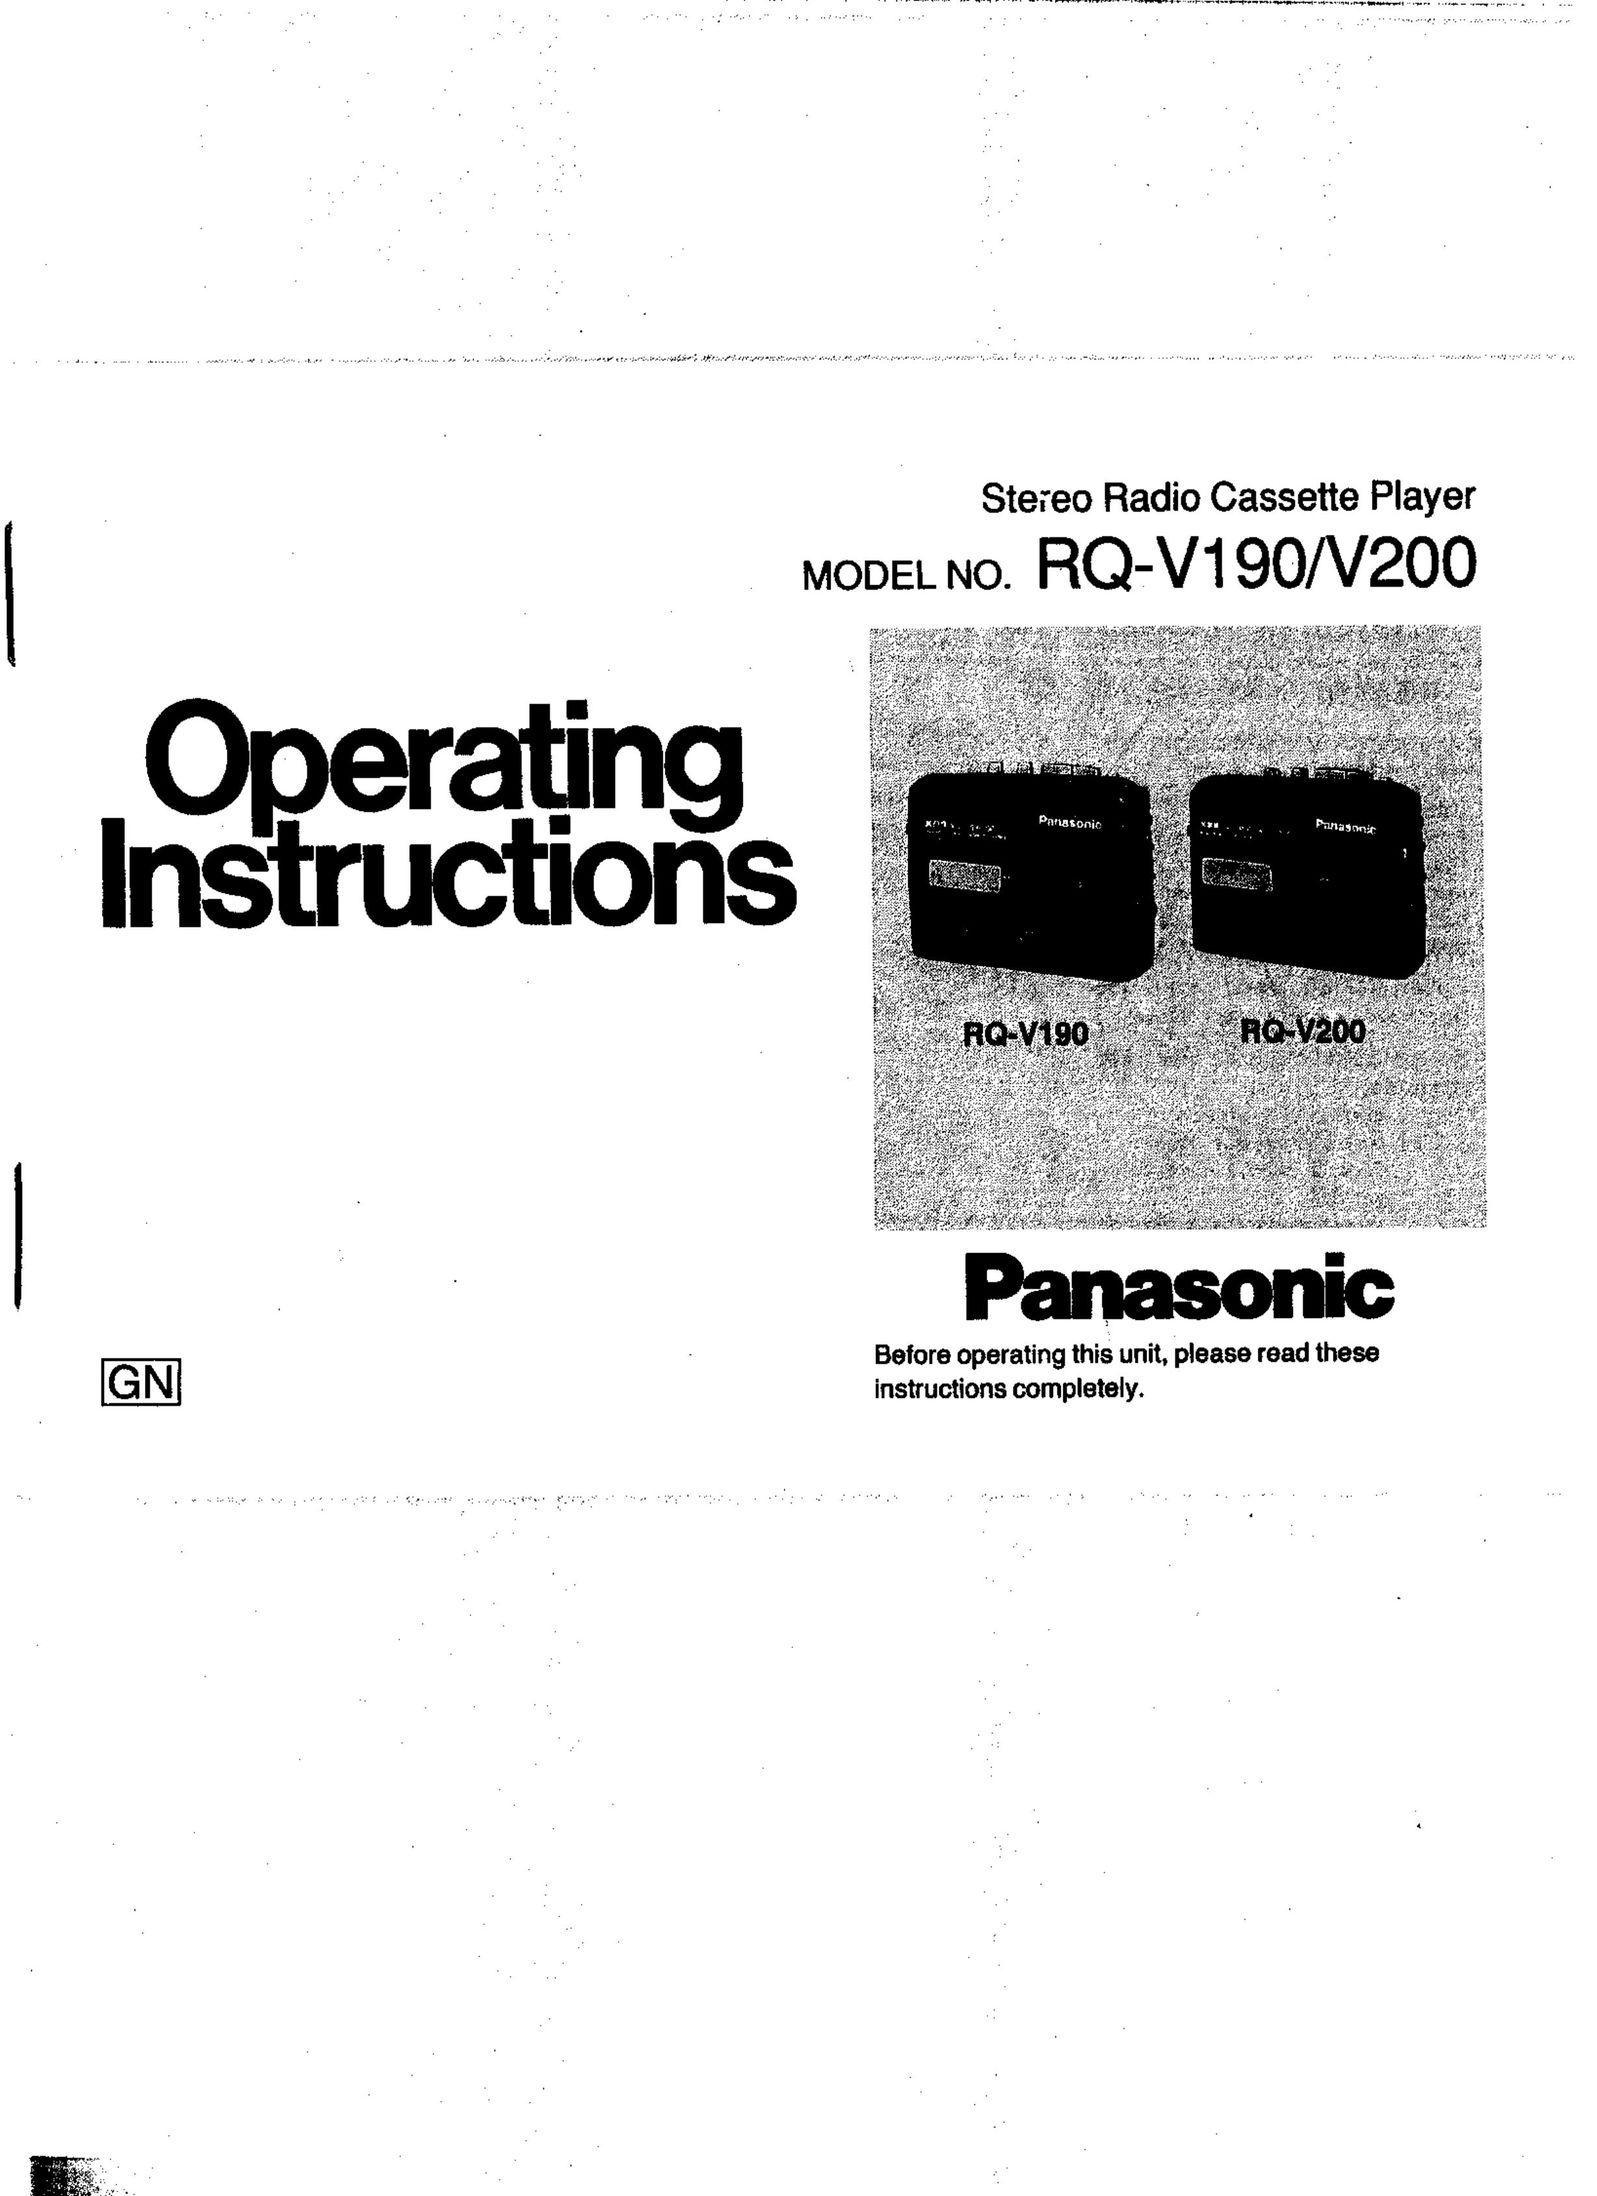 Panasonic RQ-V200 Cassette Player User Manual